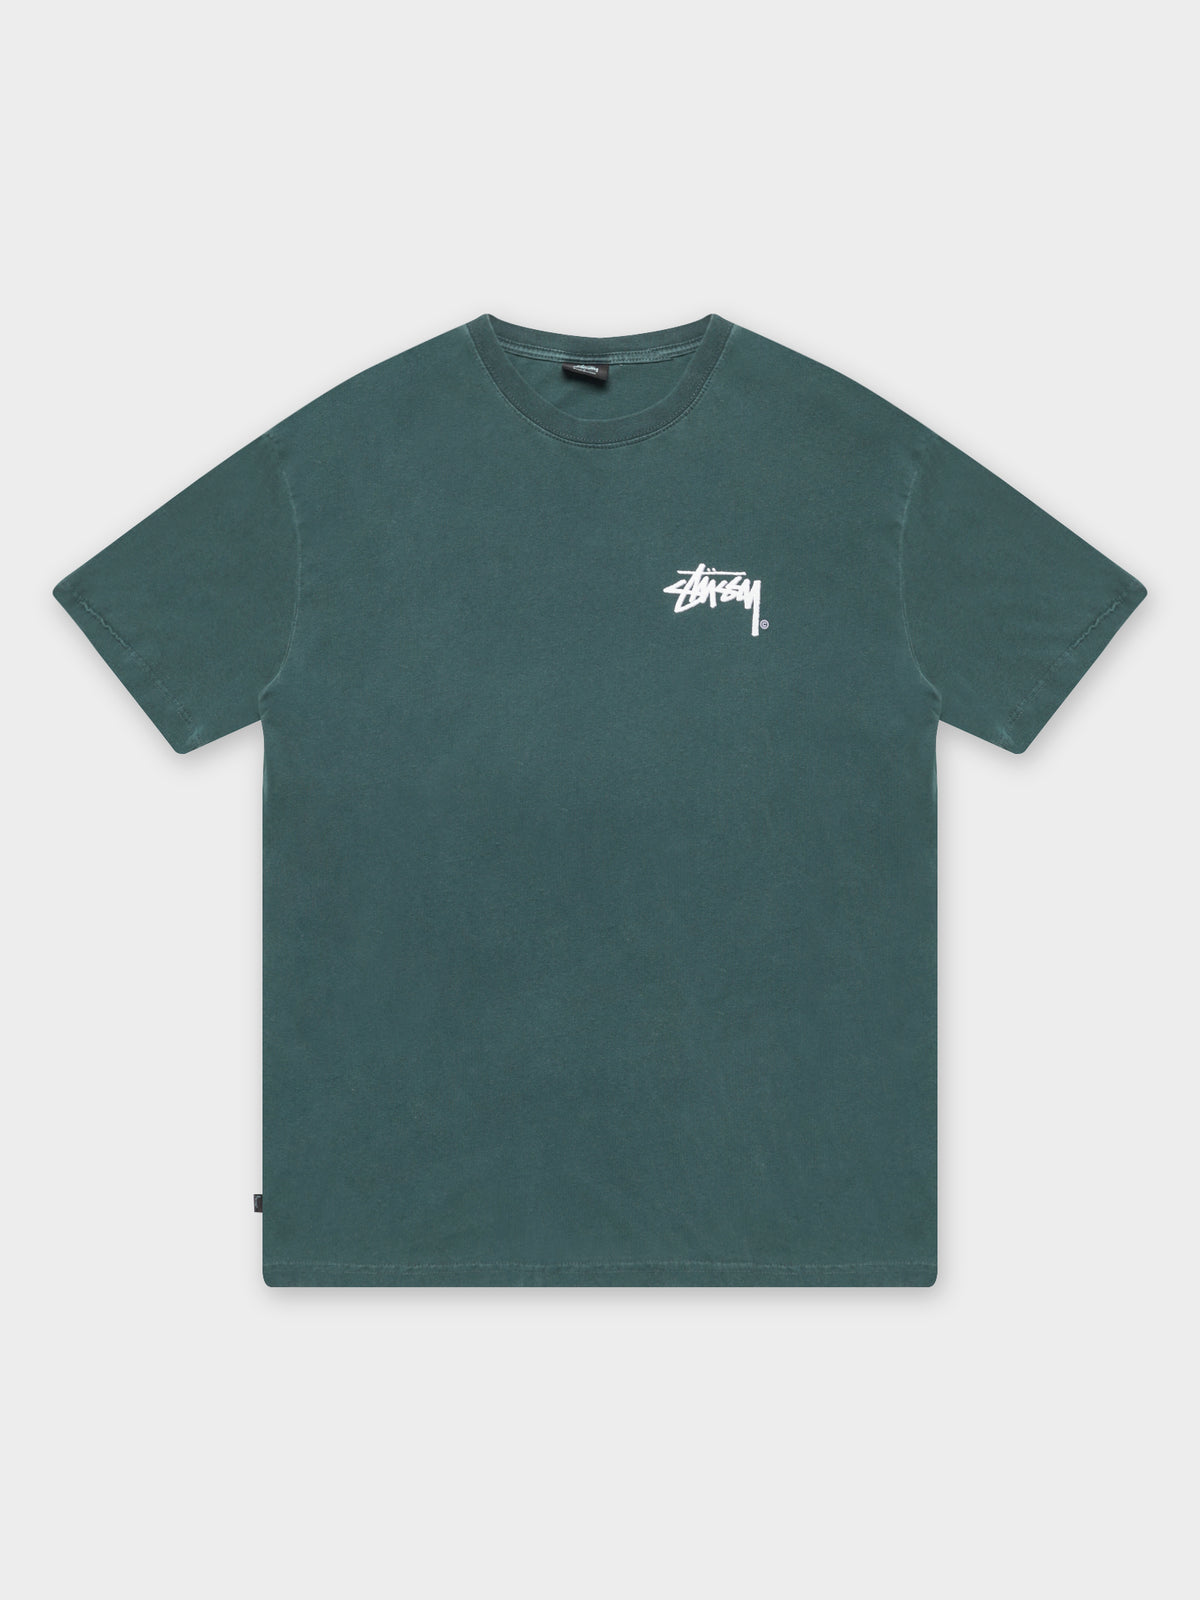 Shadow Stock T-Shirt in Pigment Ocean